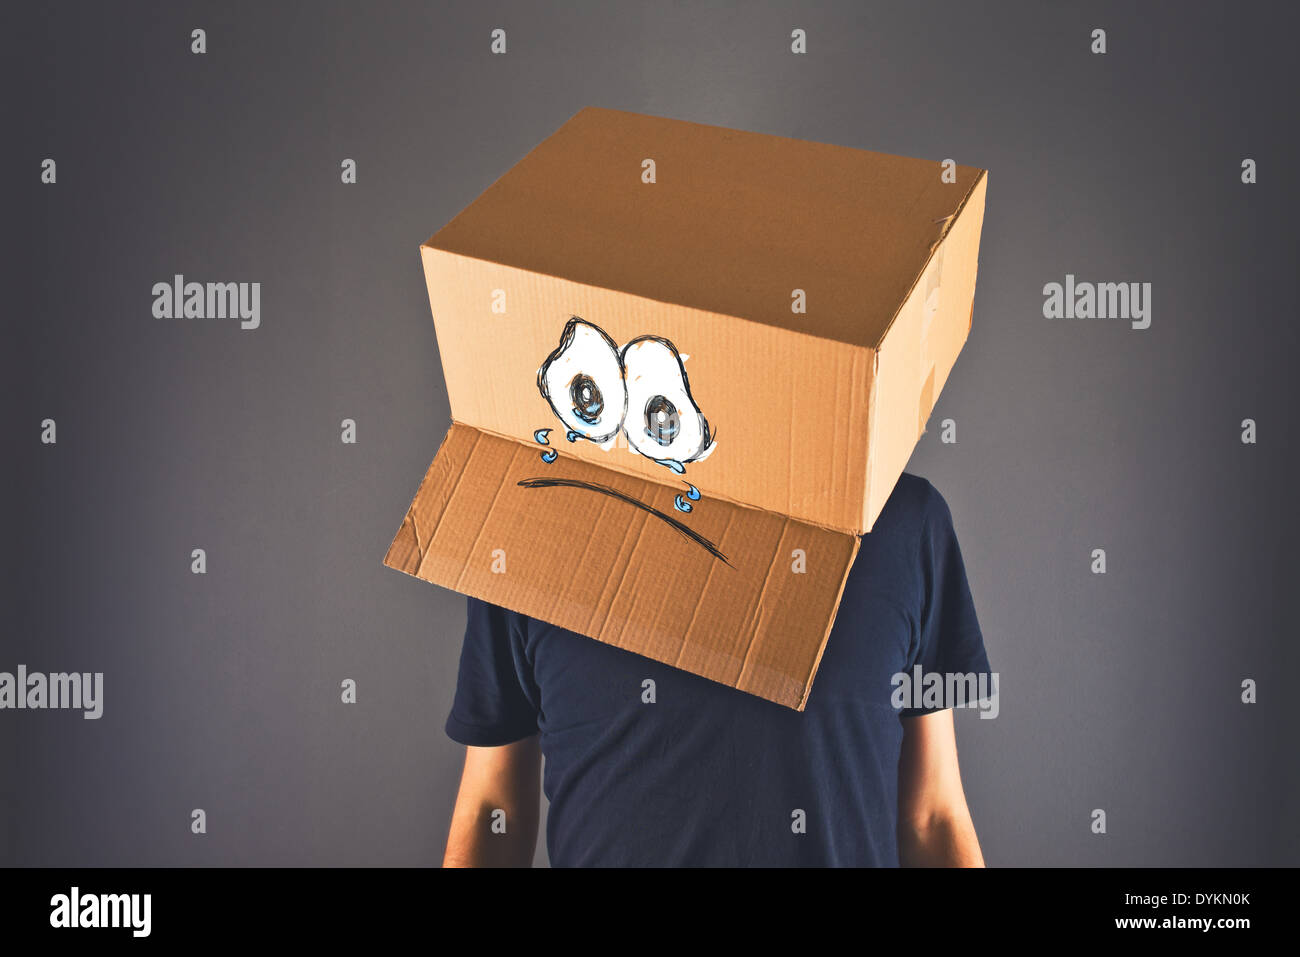 Mann mit Karton auf den Kopf und traurig weinende Gesichtsausdruck. Konzept der Traurigkeit und Depression. Stockfoto